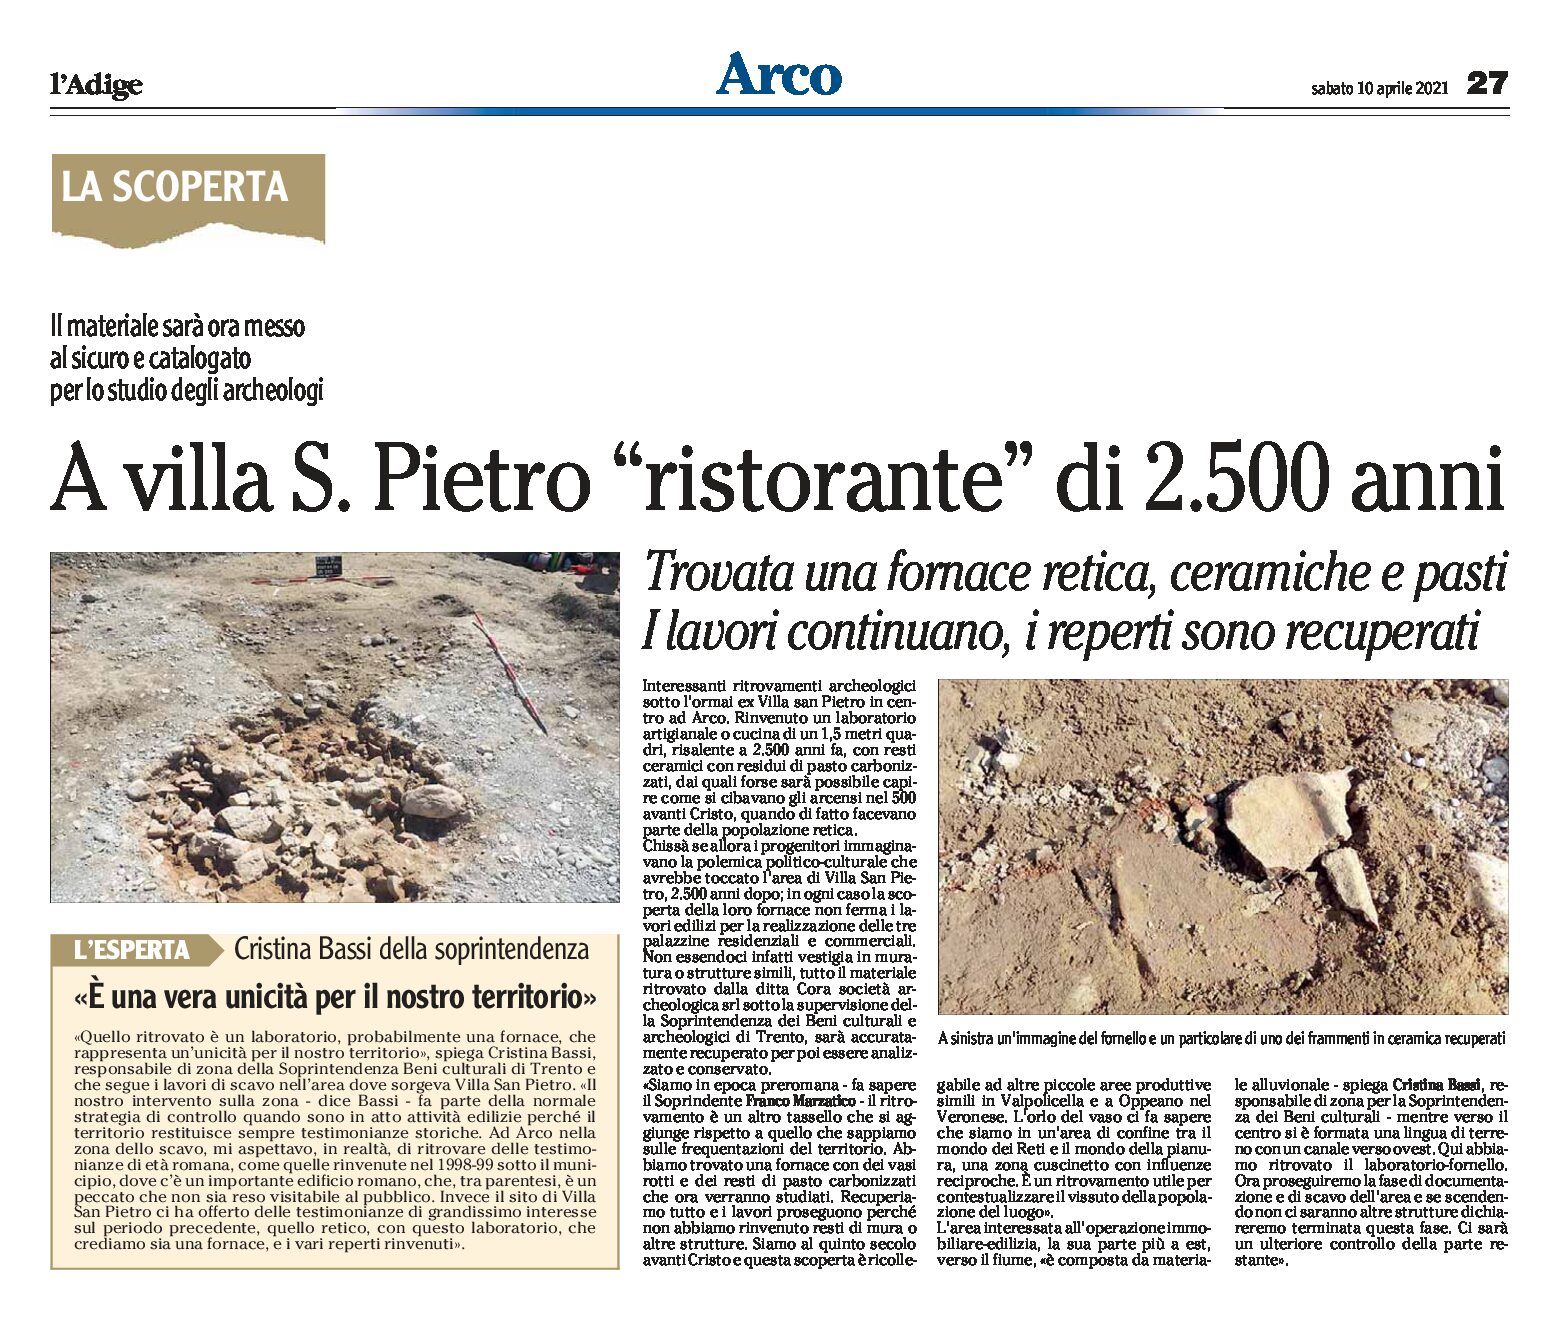 Arco, villa San Pietro: trovati una fornace retica, pasti e ceramiche di 2.500 anni